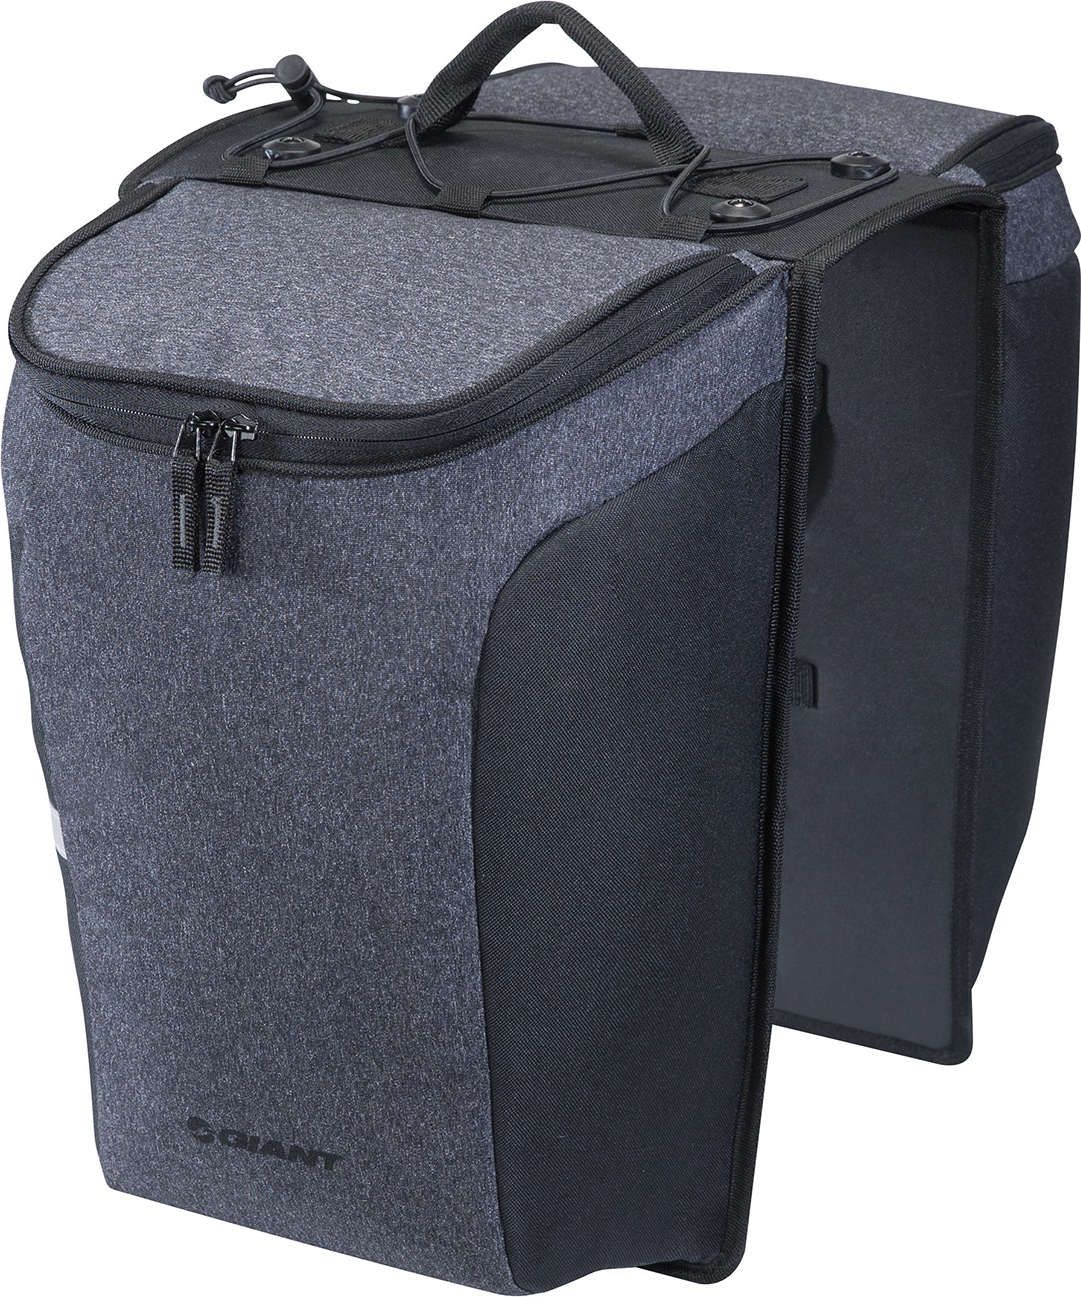 Pannier Gepäckträger Tasche mit MIK kompatibel klein klein